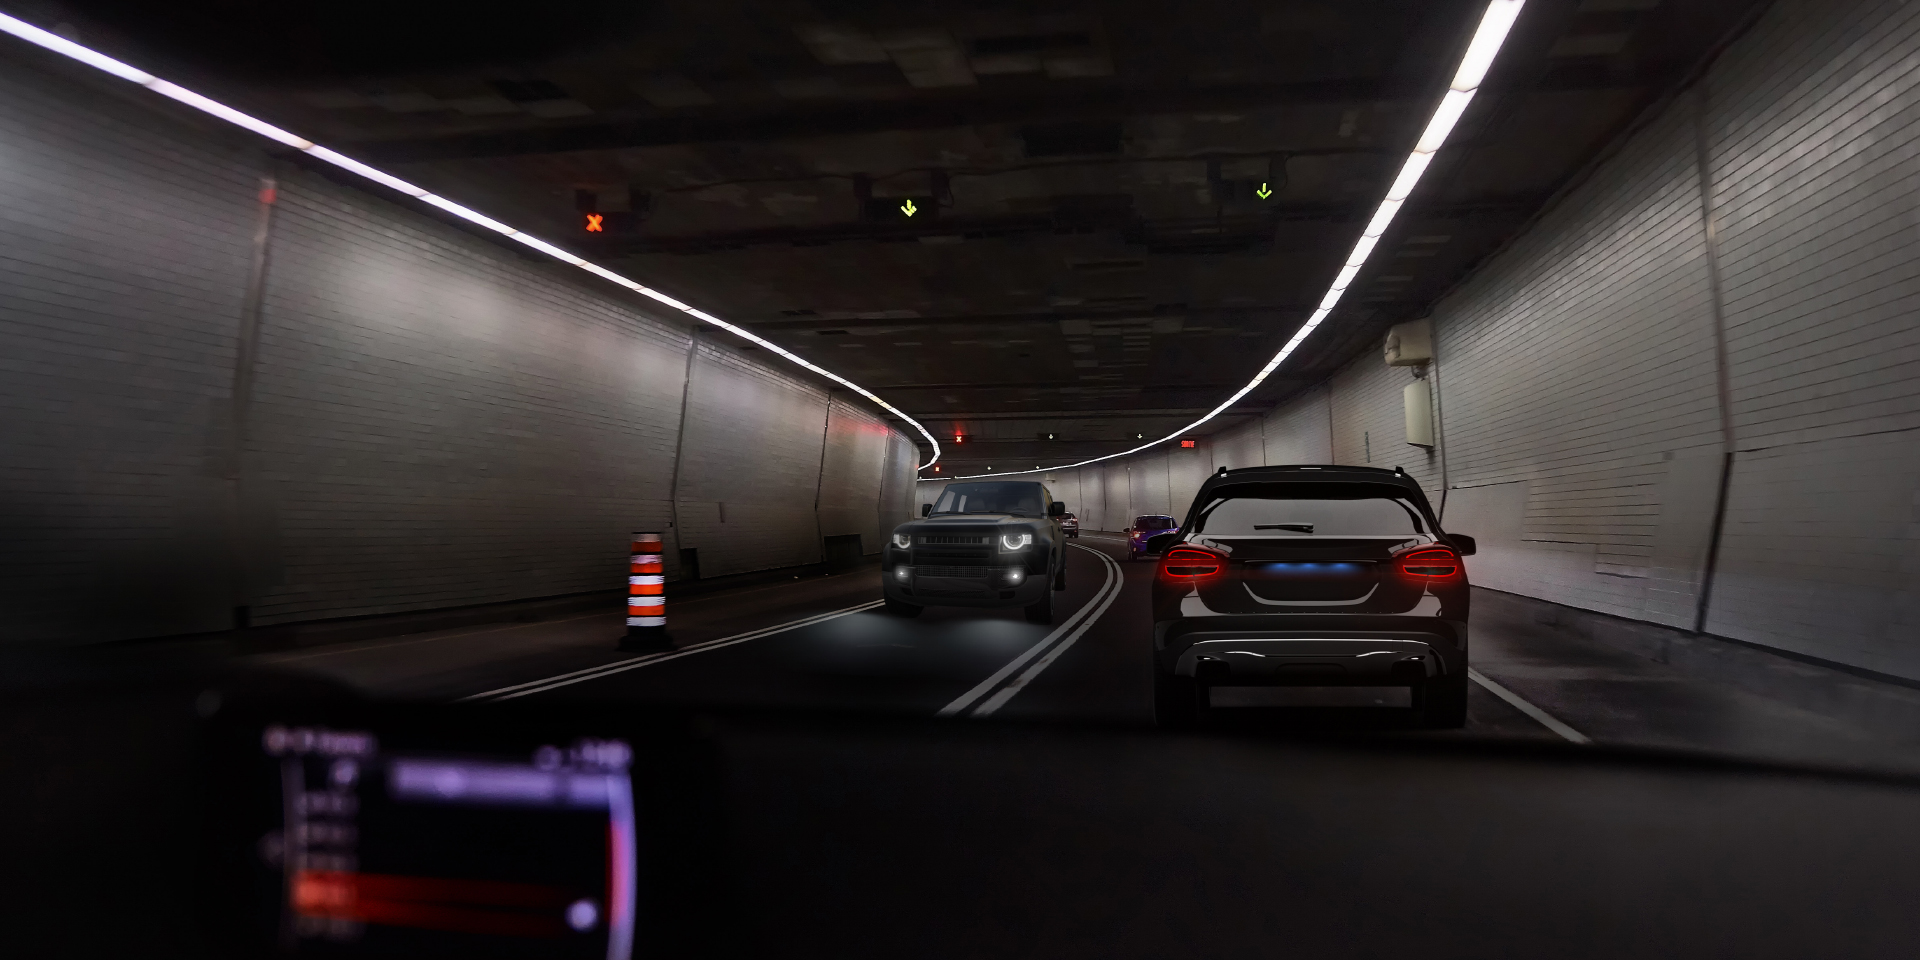 Zwei Bilder aus der Perspektive eines Autofahrers in einem Tunnel mit durchfahrendem Verkehr. Ein Bild zeigt die Blendung durch ein Auto und die Tunnelbeleuchtung, das andere Bild zeigt deutlich weniger Blendung.